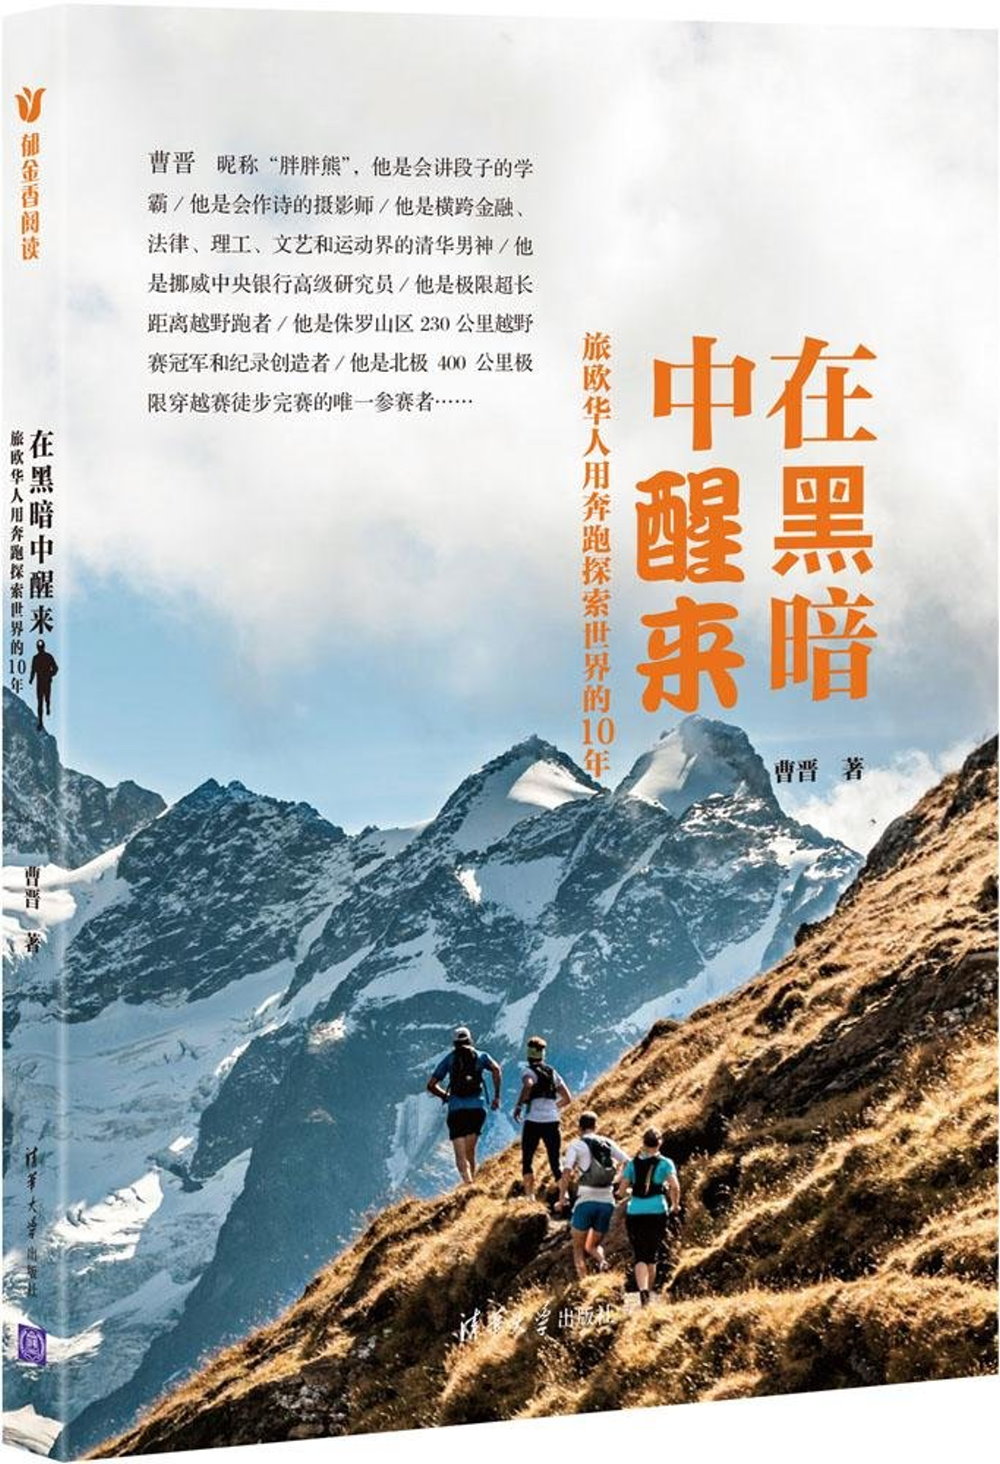 在黑暗中醒來:旅歐華人用奔跑探索世界的10年